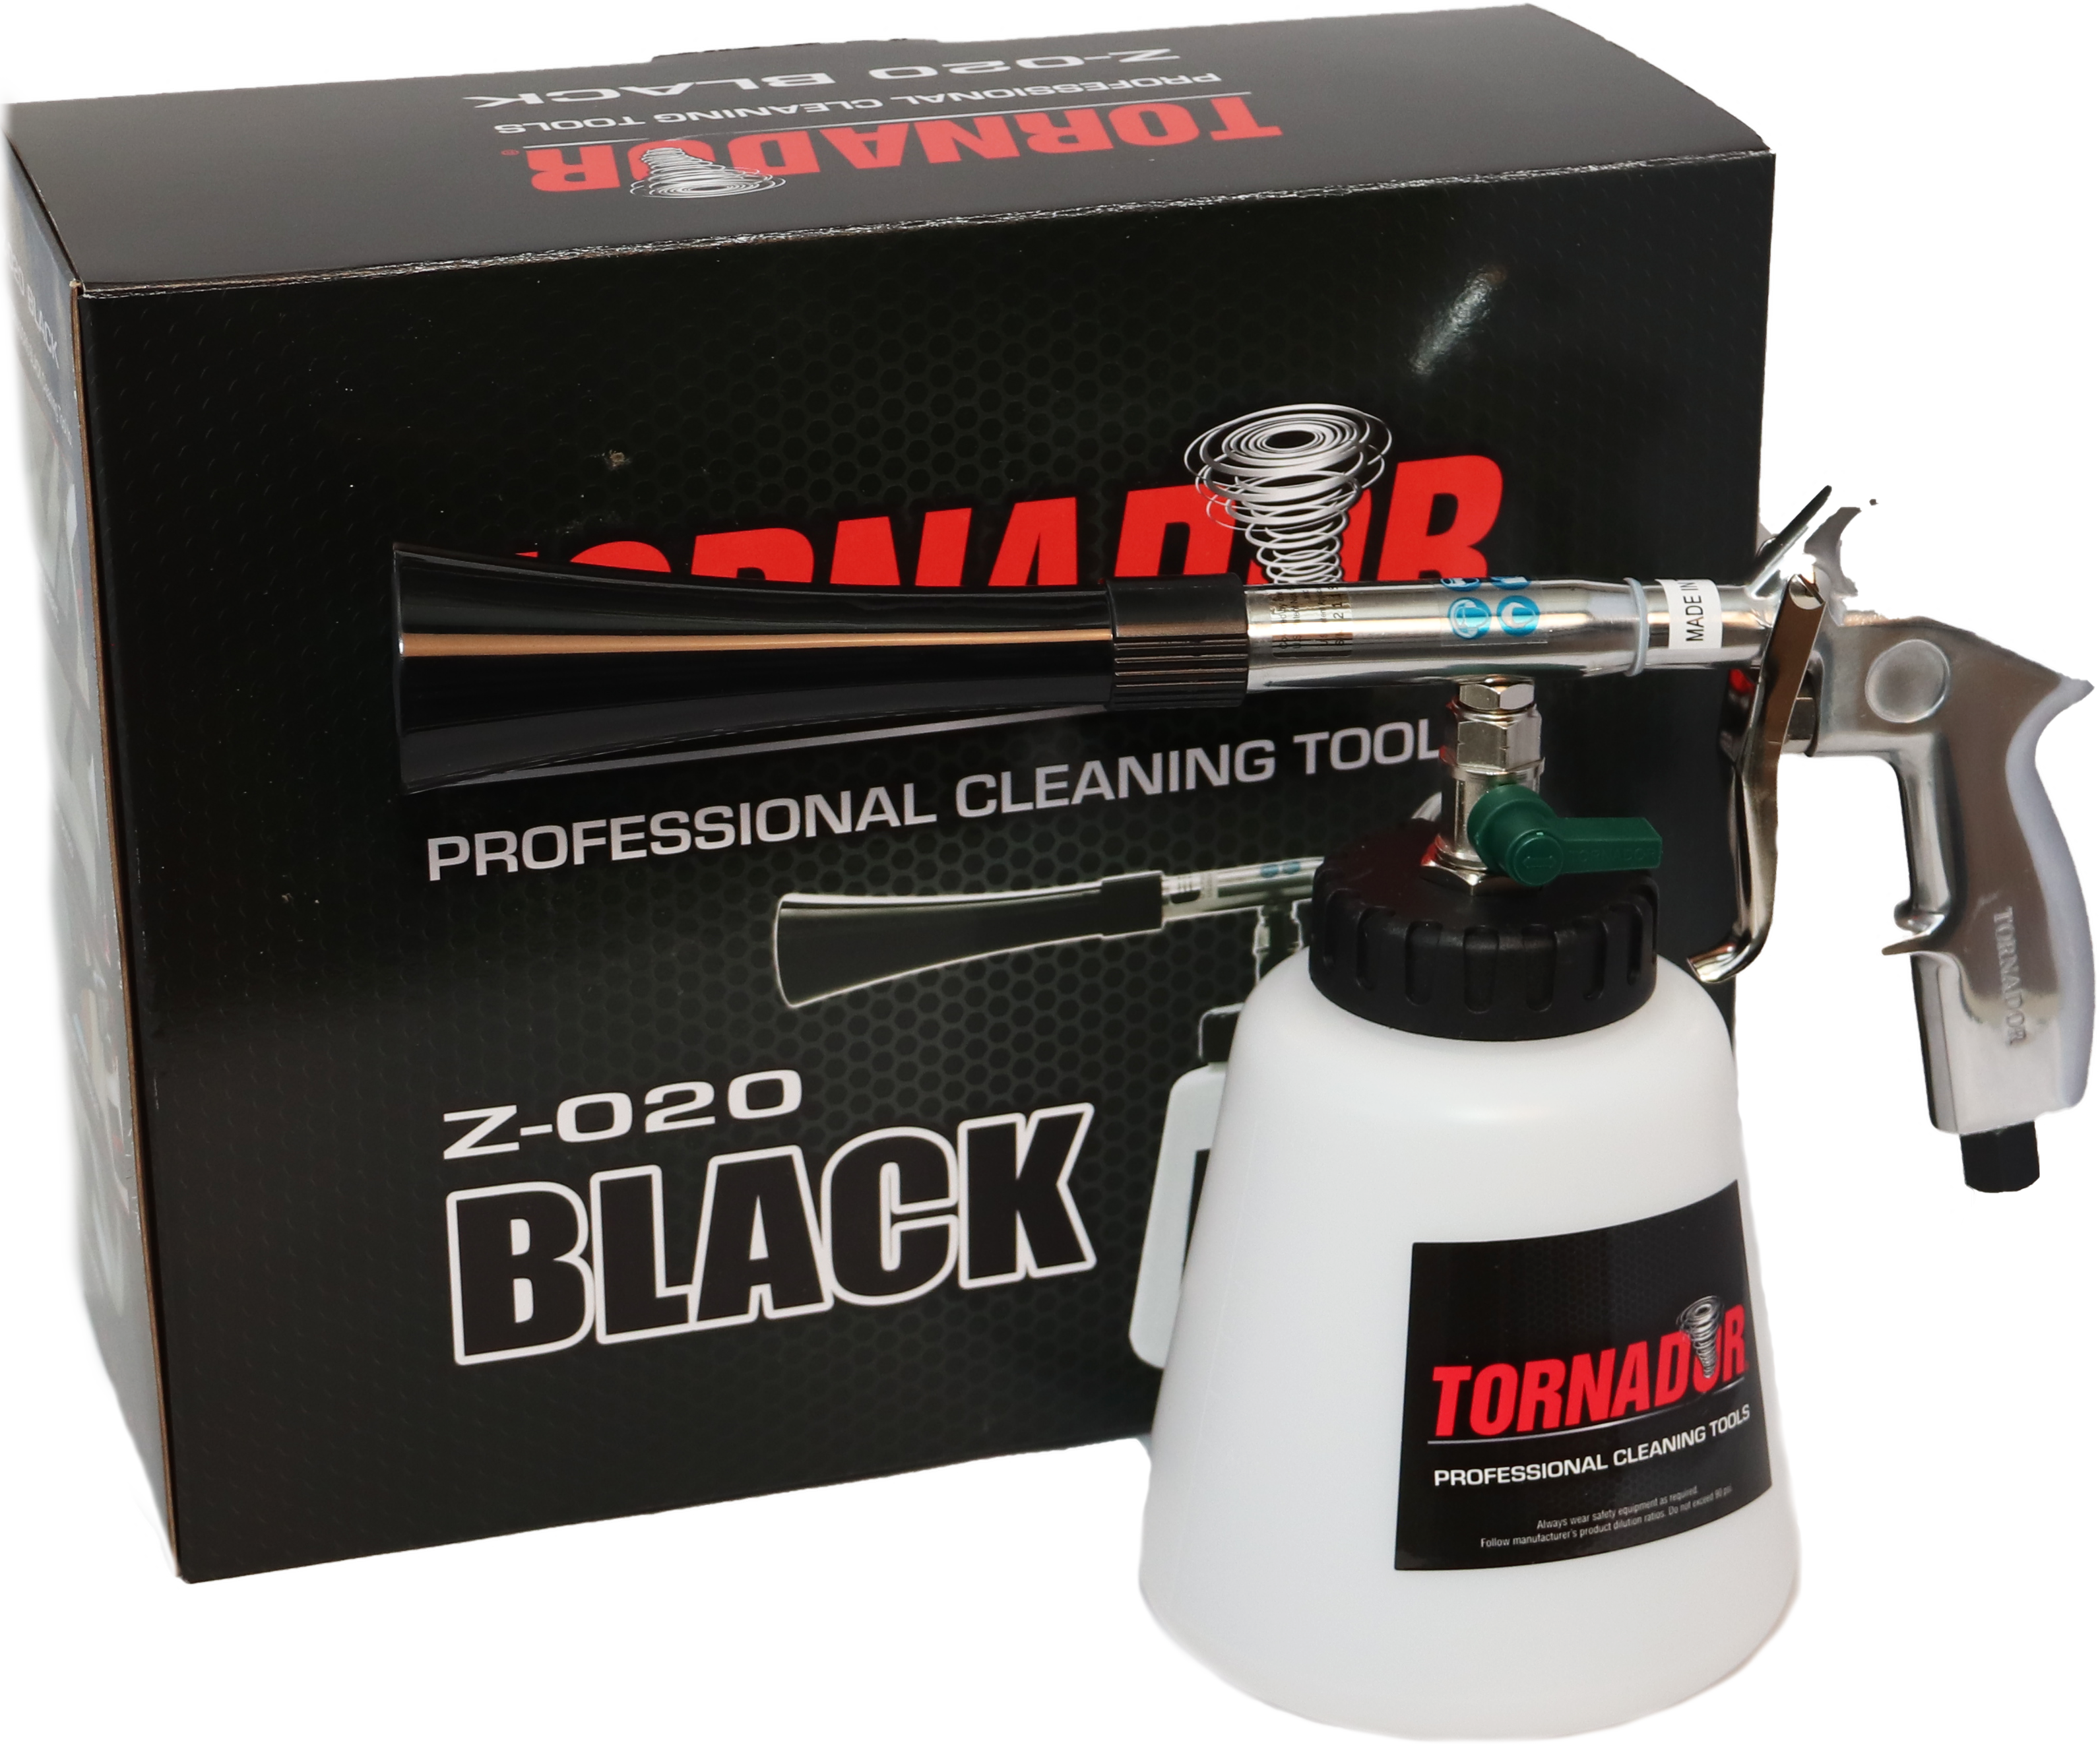 Tornador Black Z-020, Tornador Black Car Tool